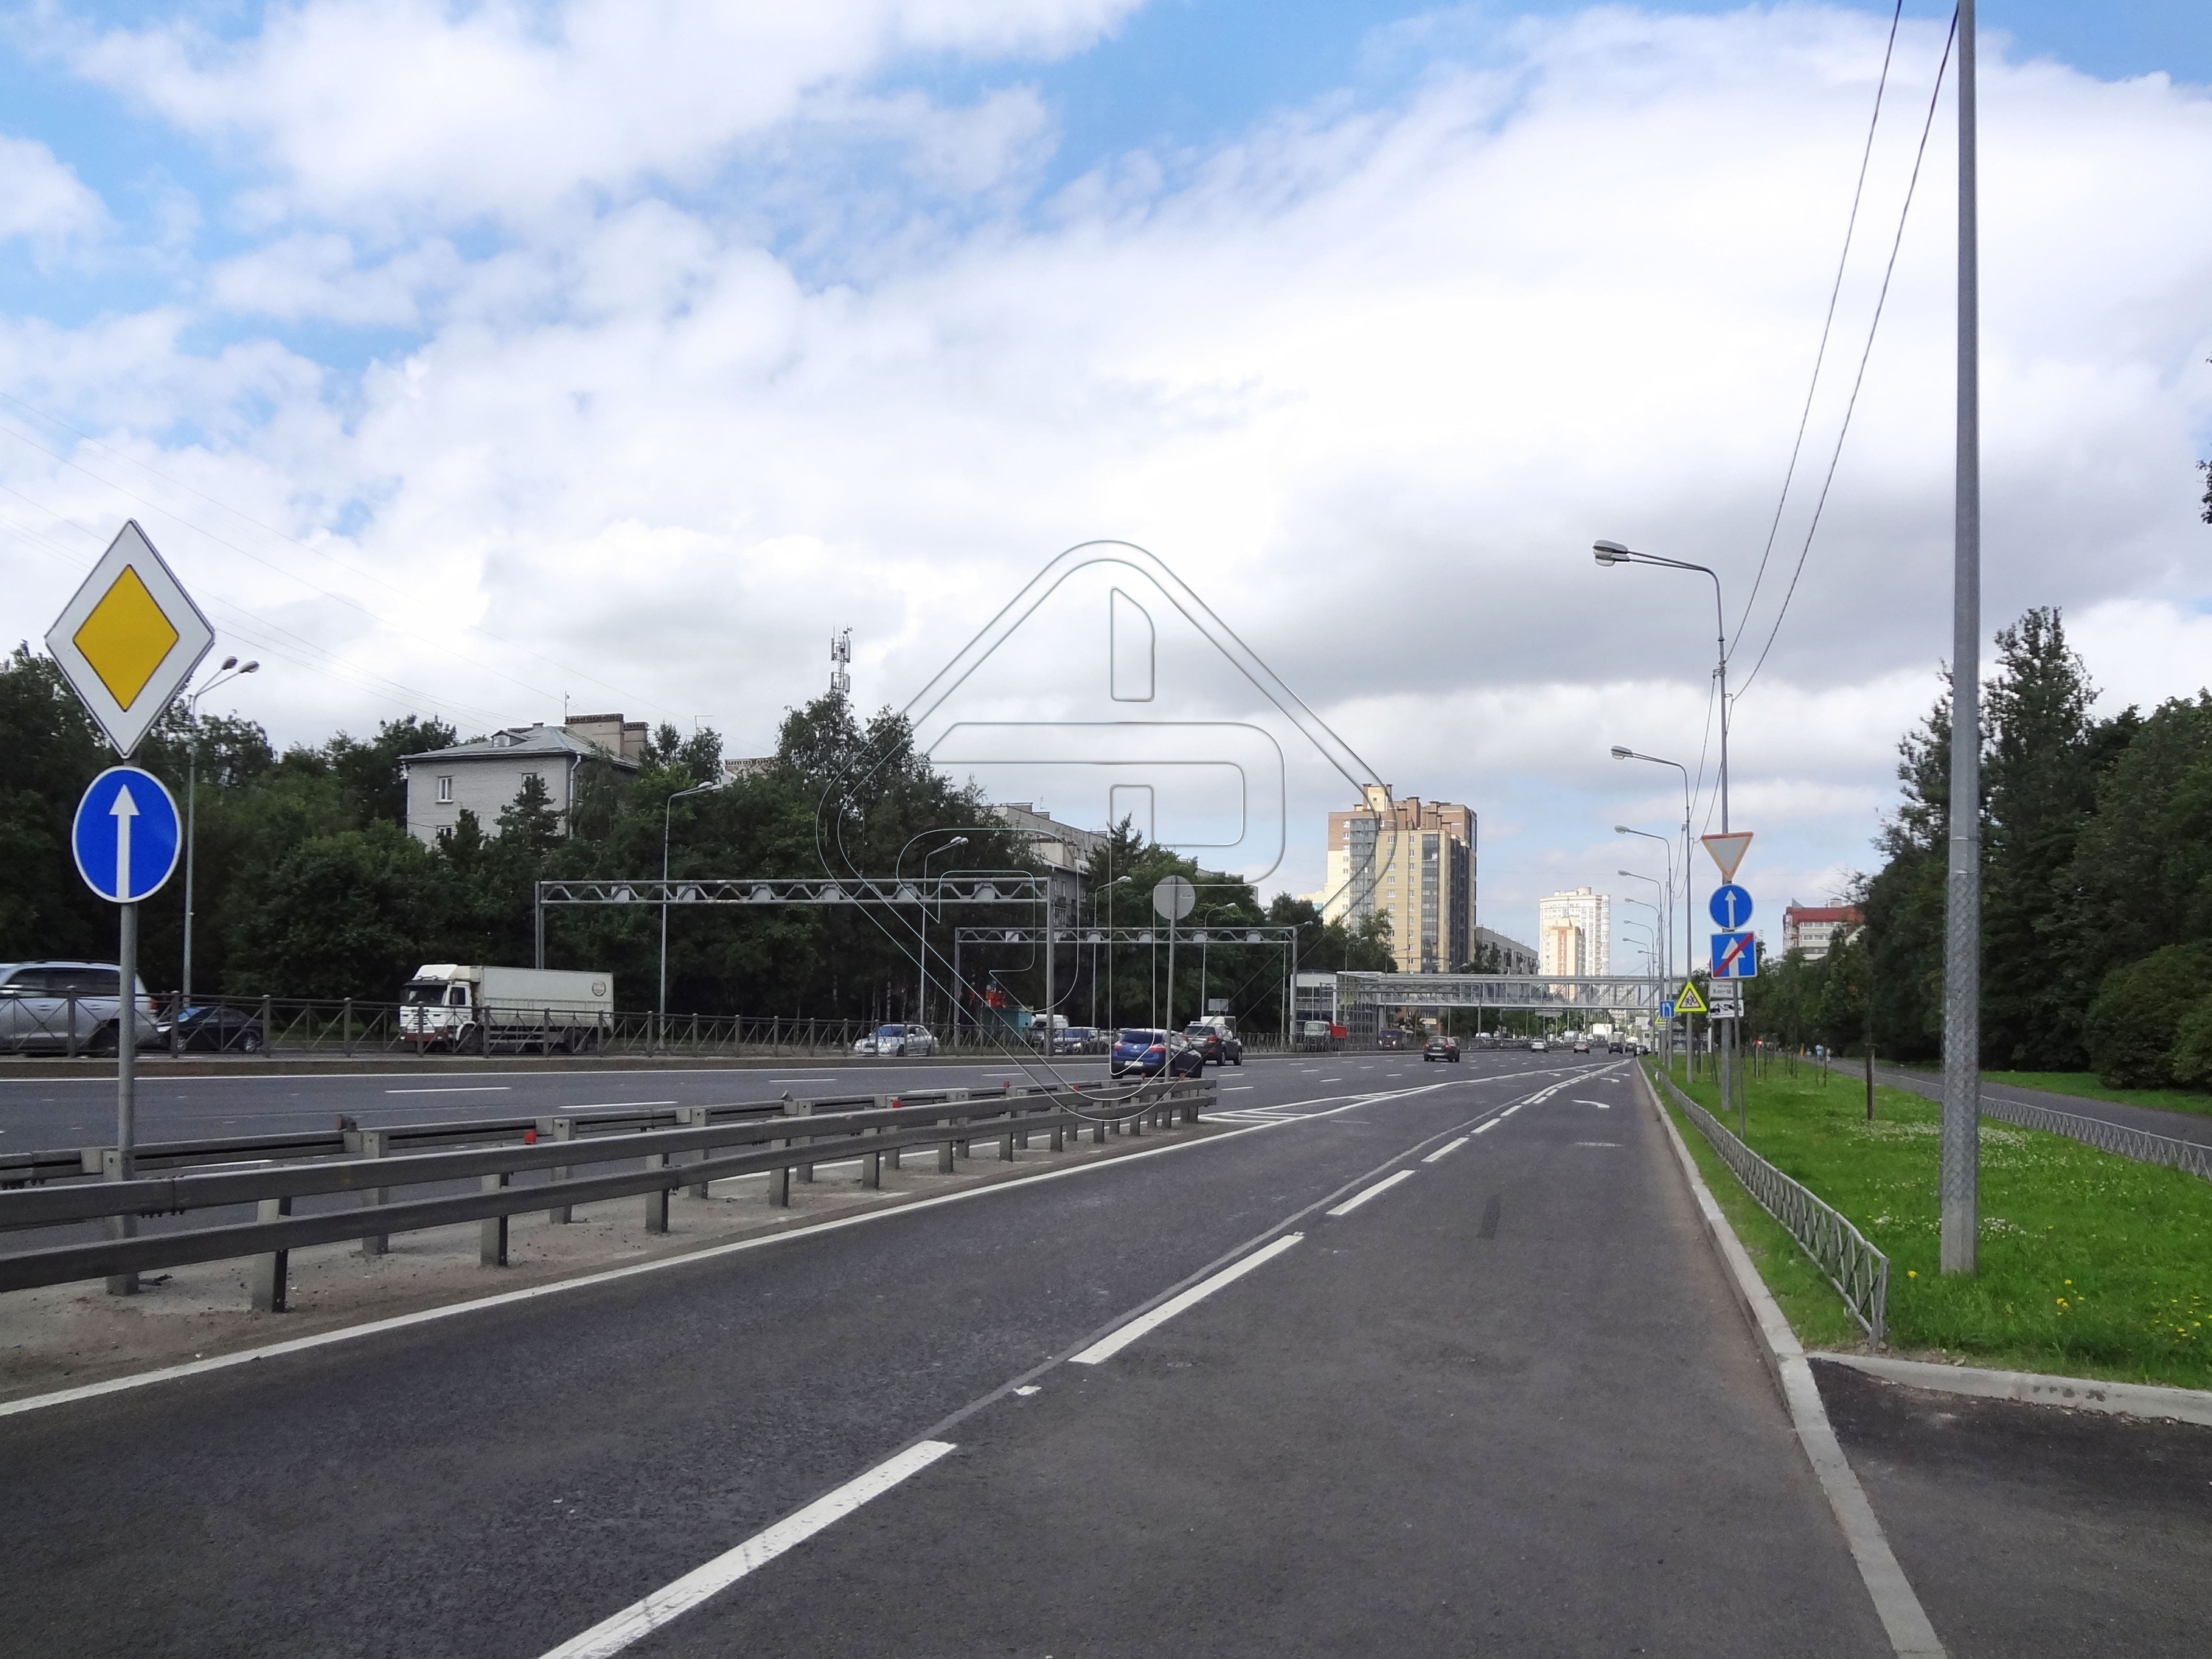 Дачный проспект, Санкт-Петербург | поставка гранитной продукции